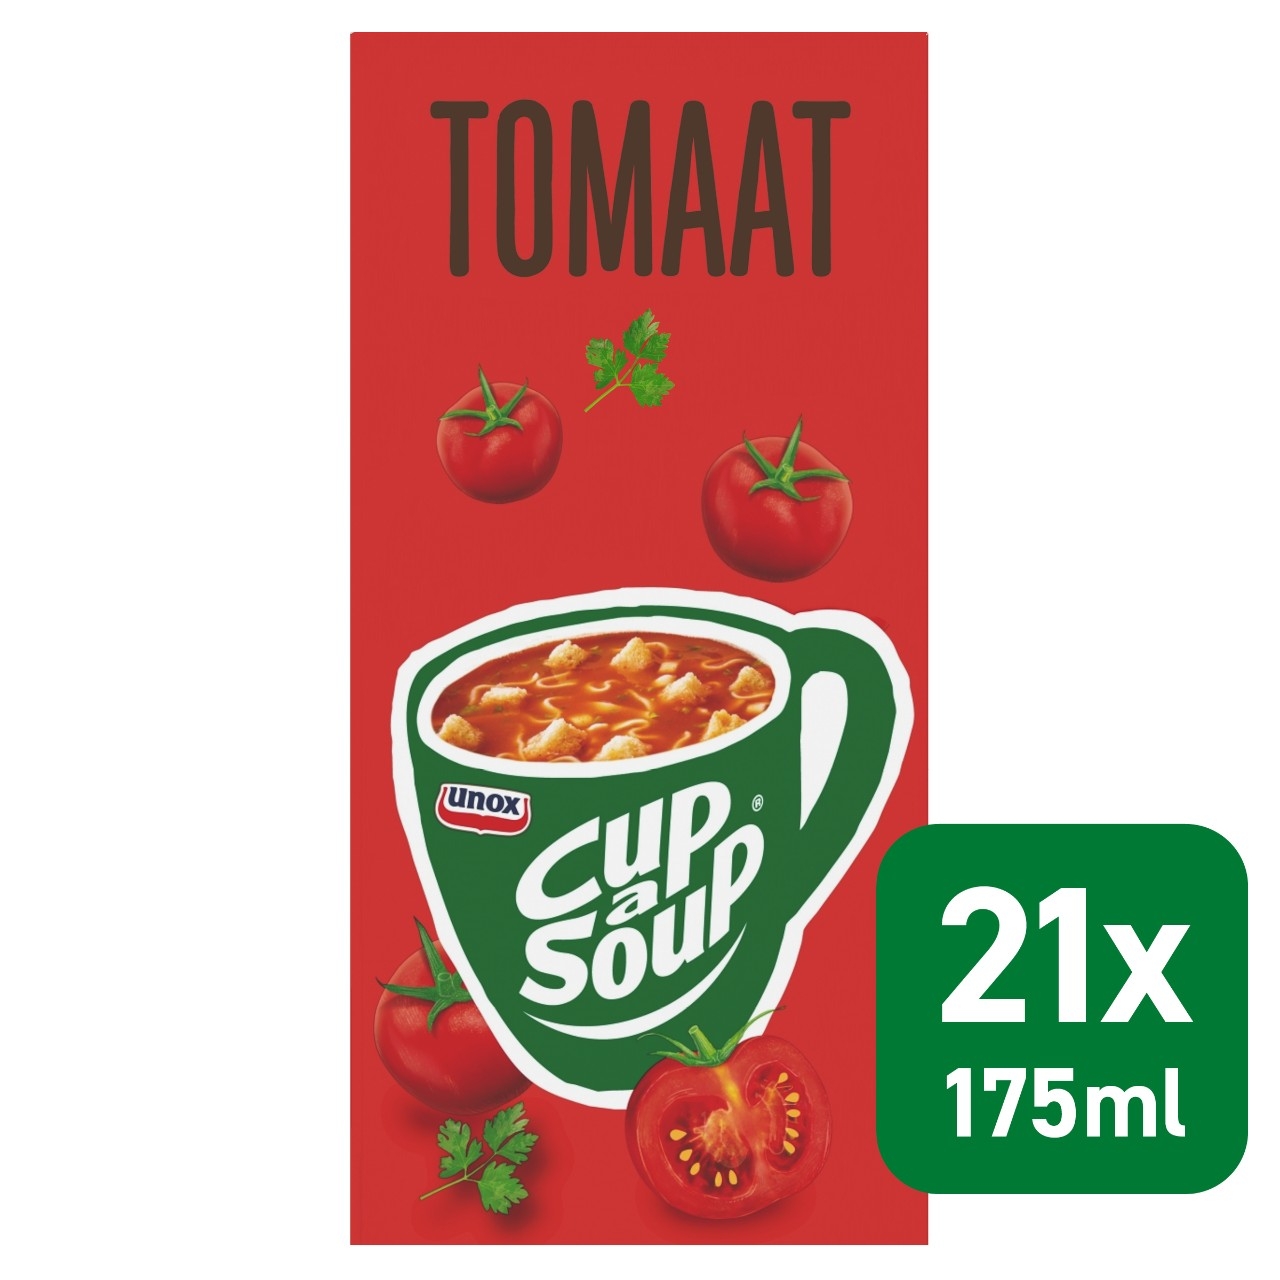 Cup a soup tomaten creme 21 zakjes